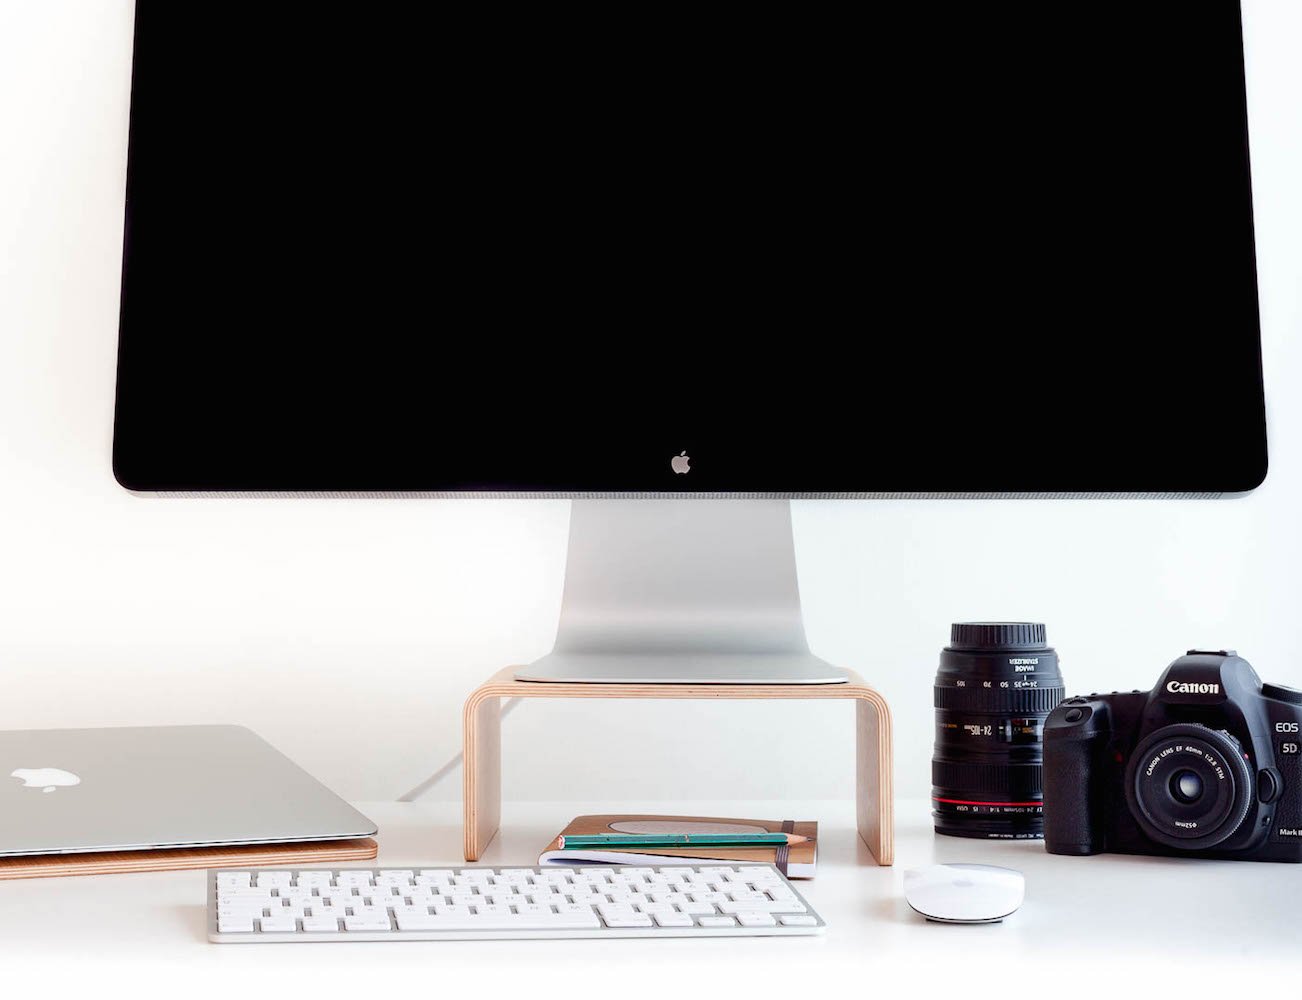 iMac & Display Stand